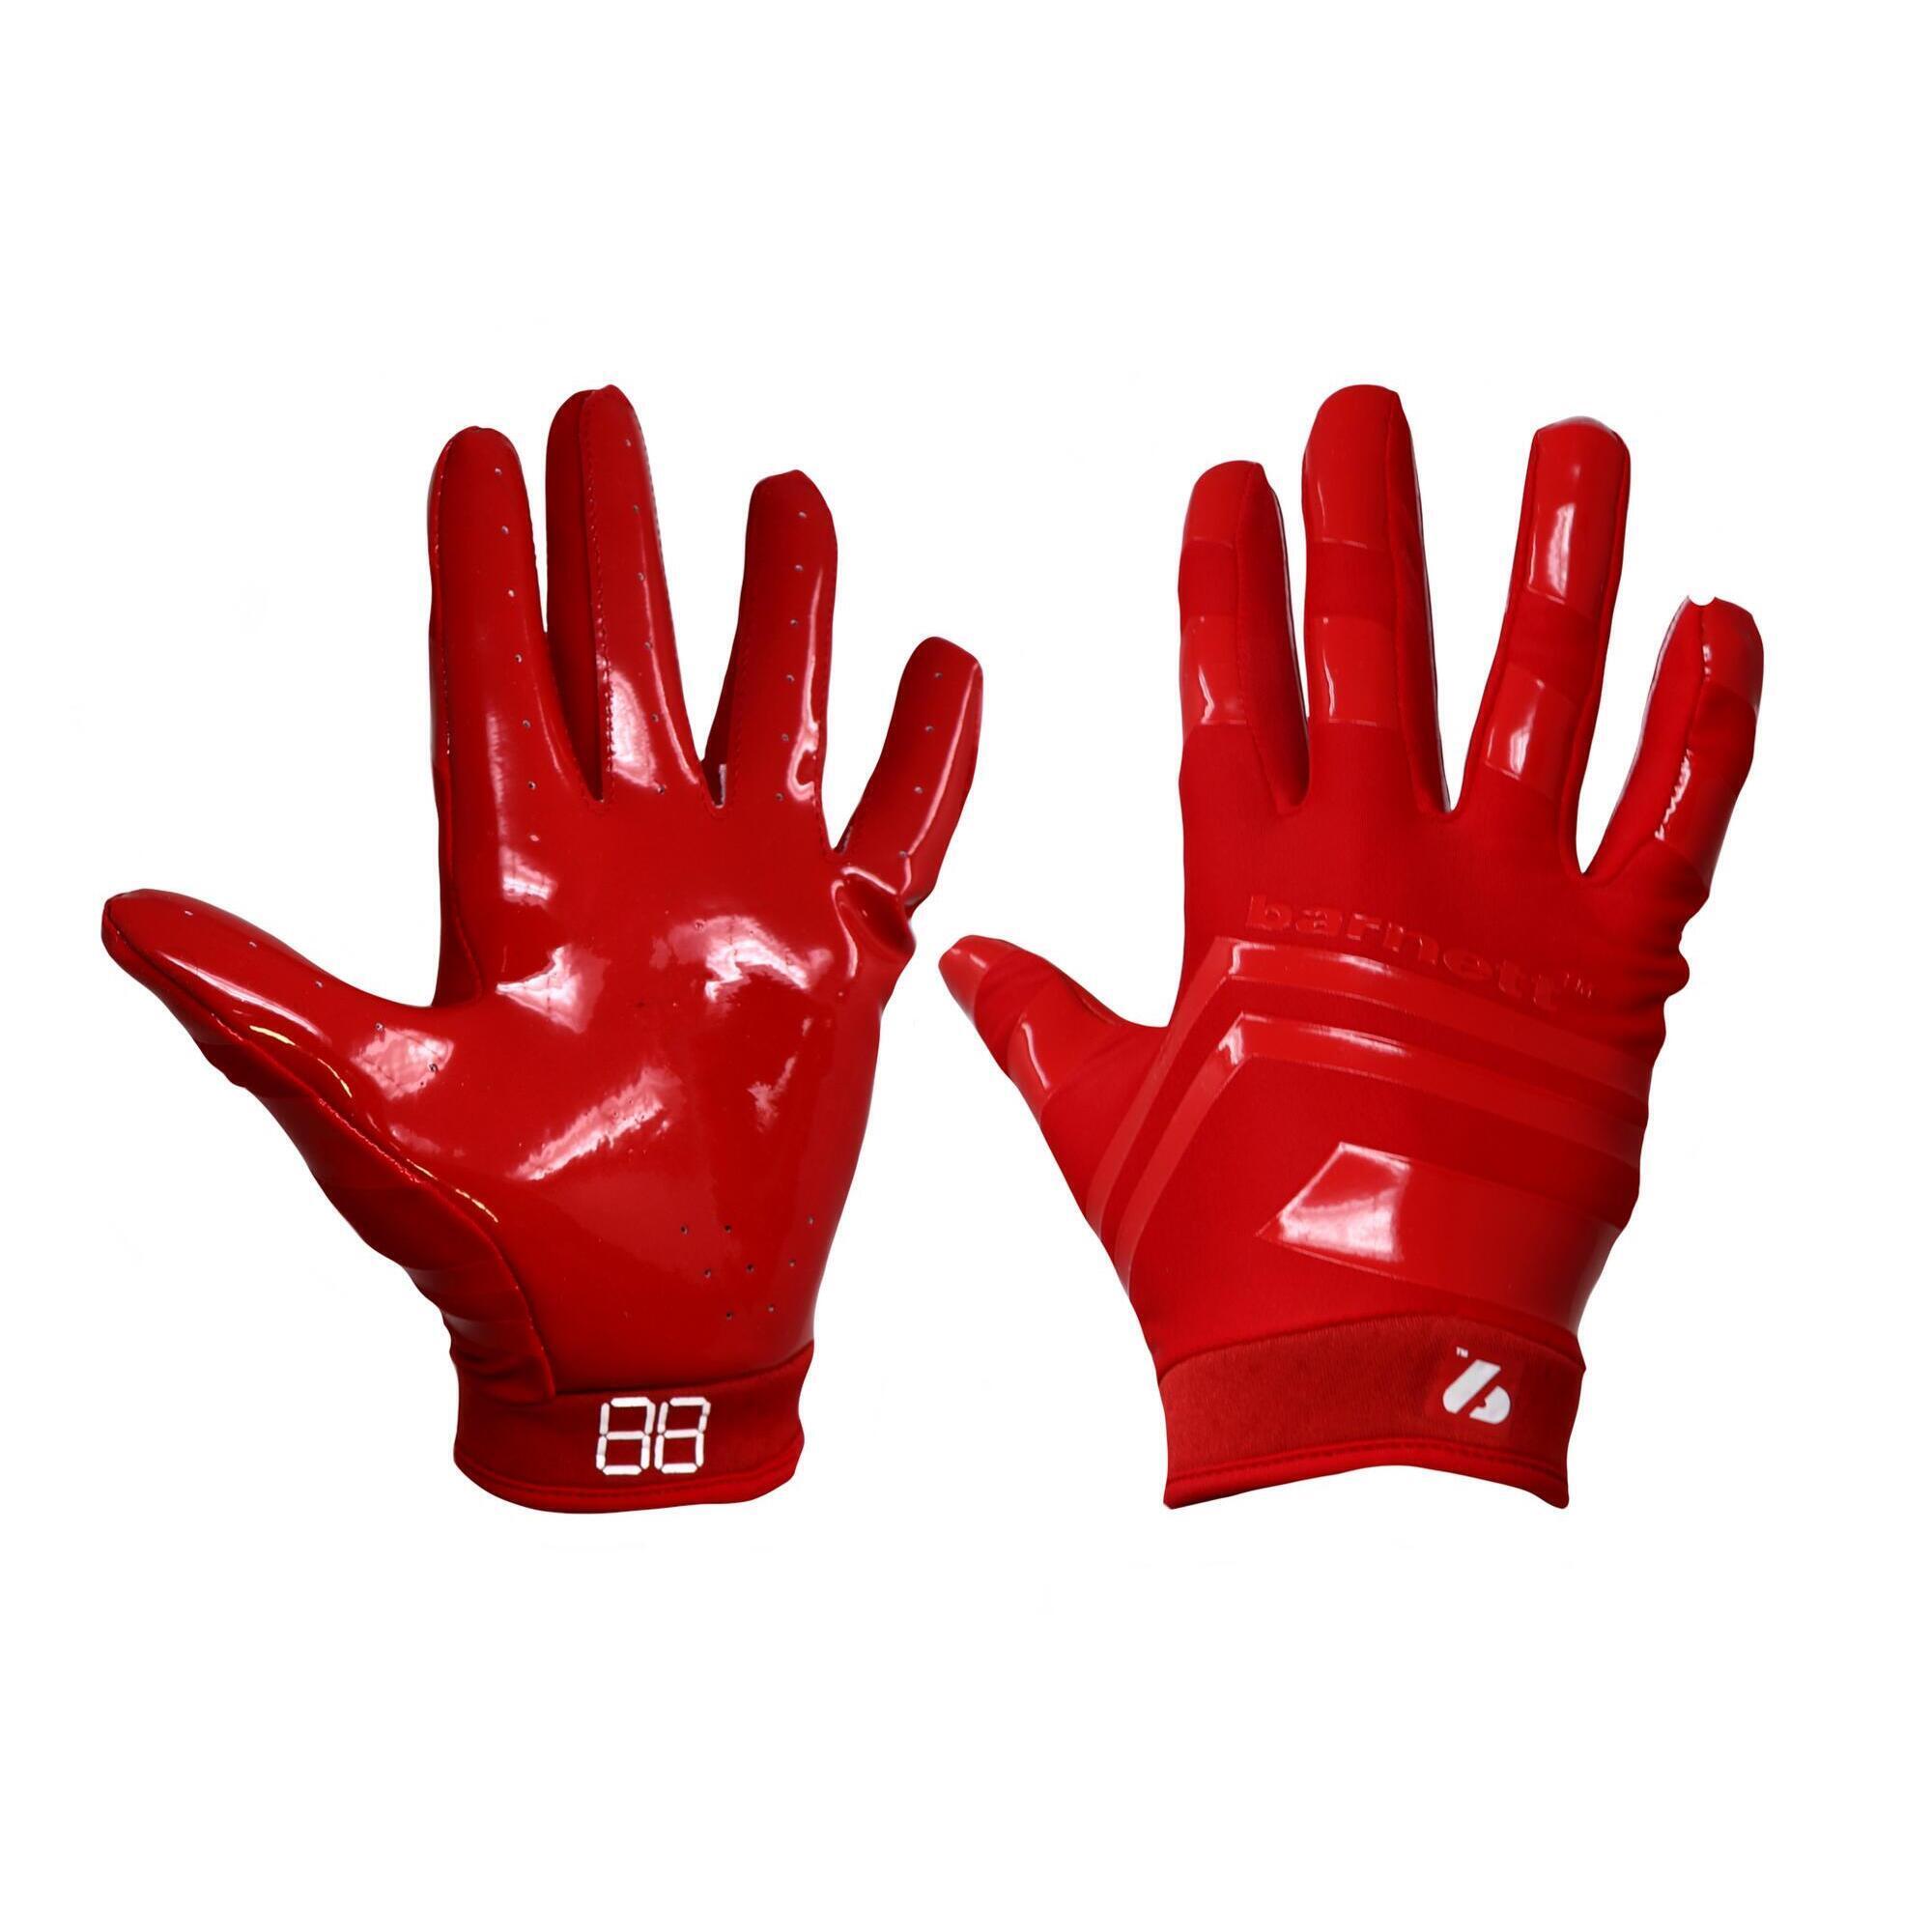 BARNETT  pro receiver American football gloves, RE, DB, RB, Red FRG-03